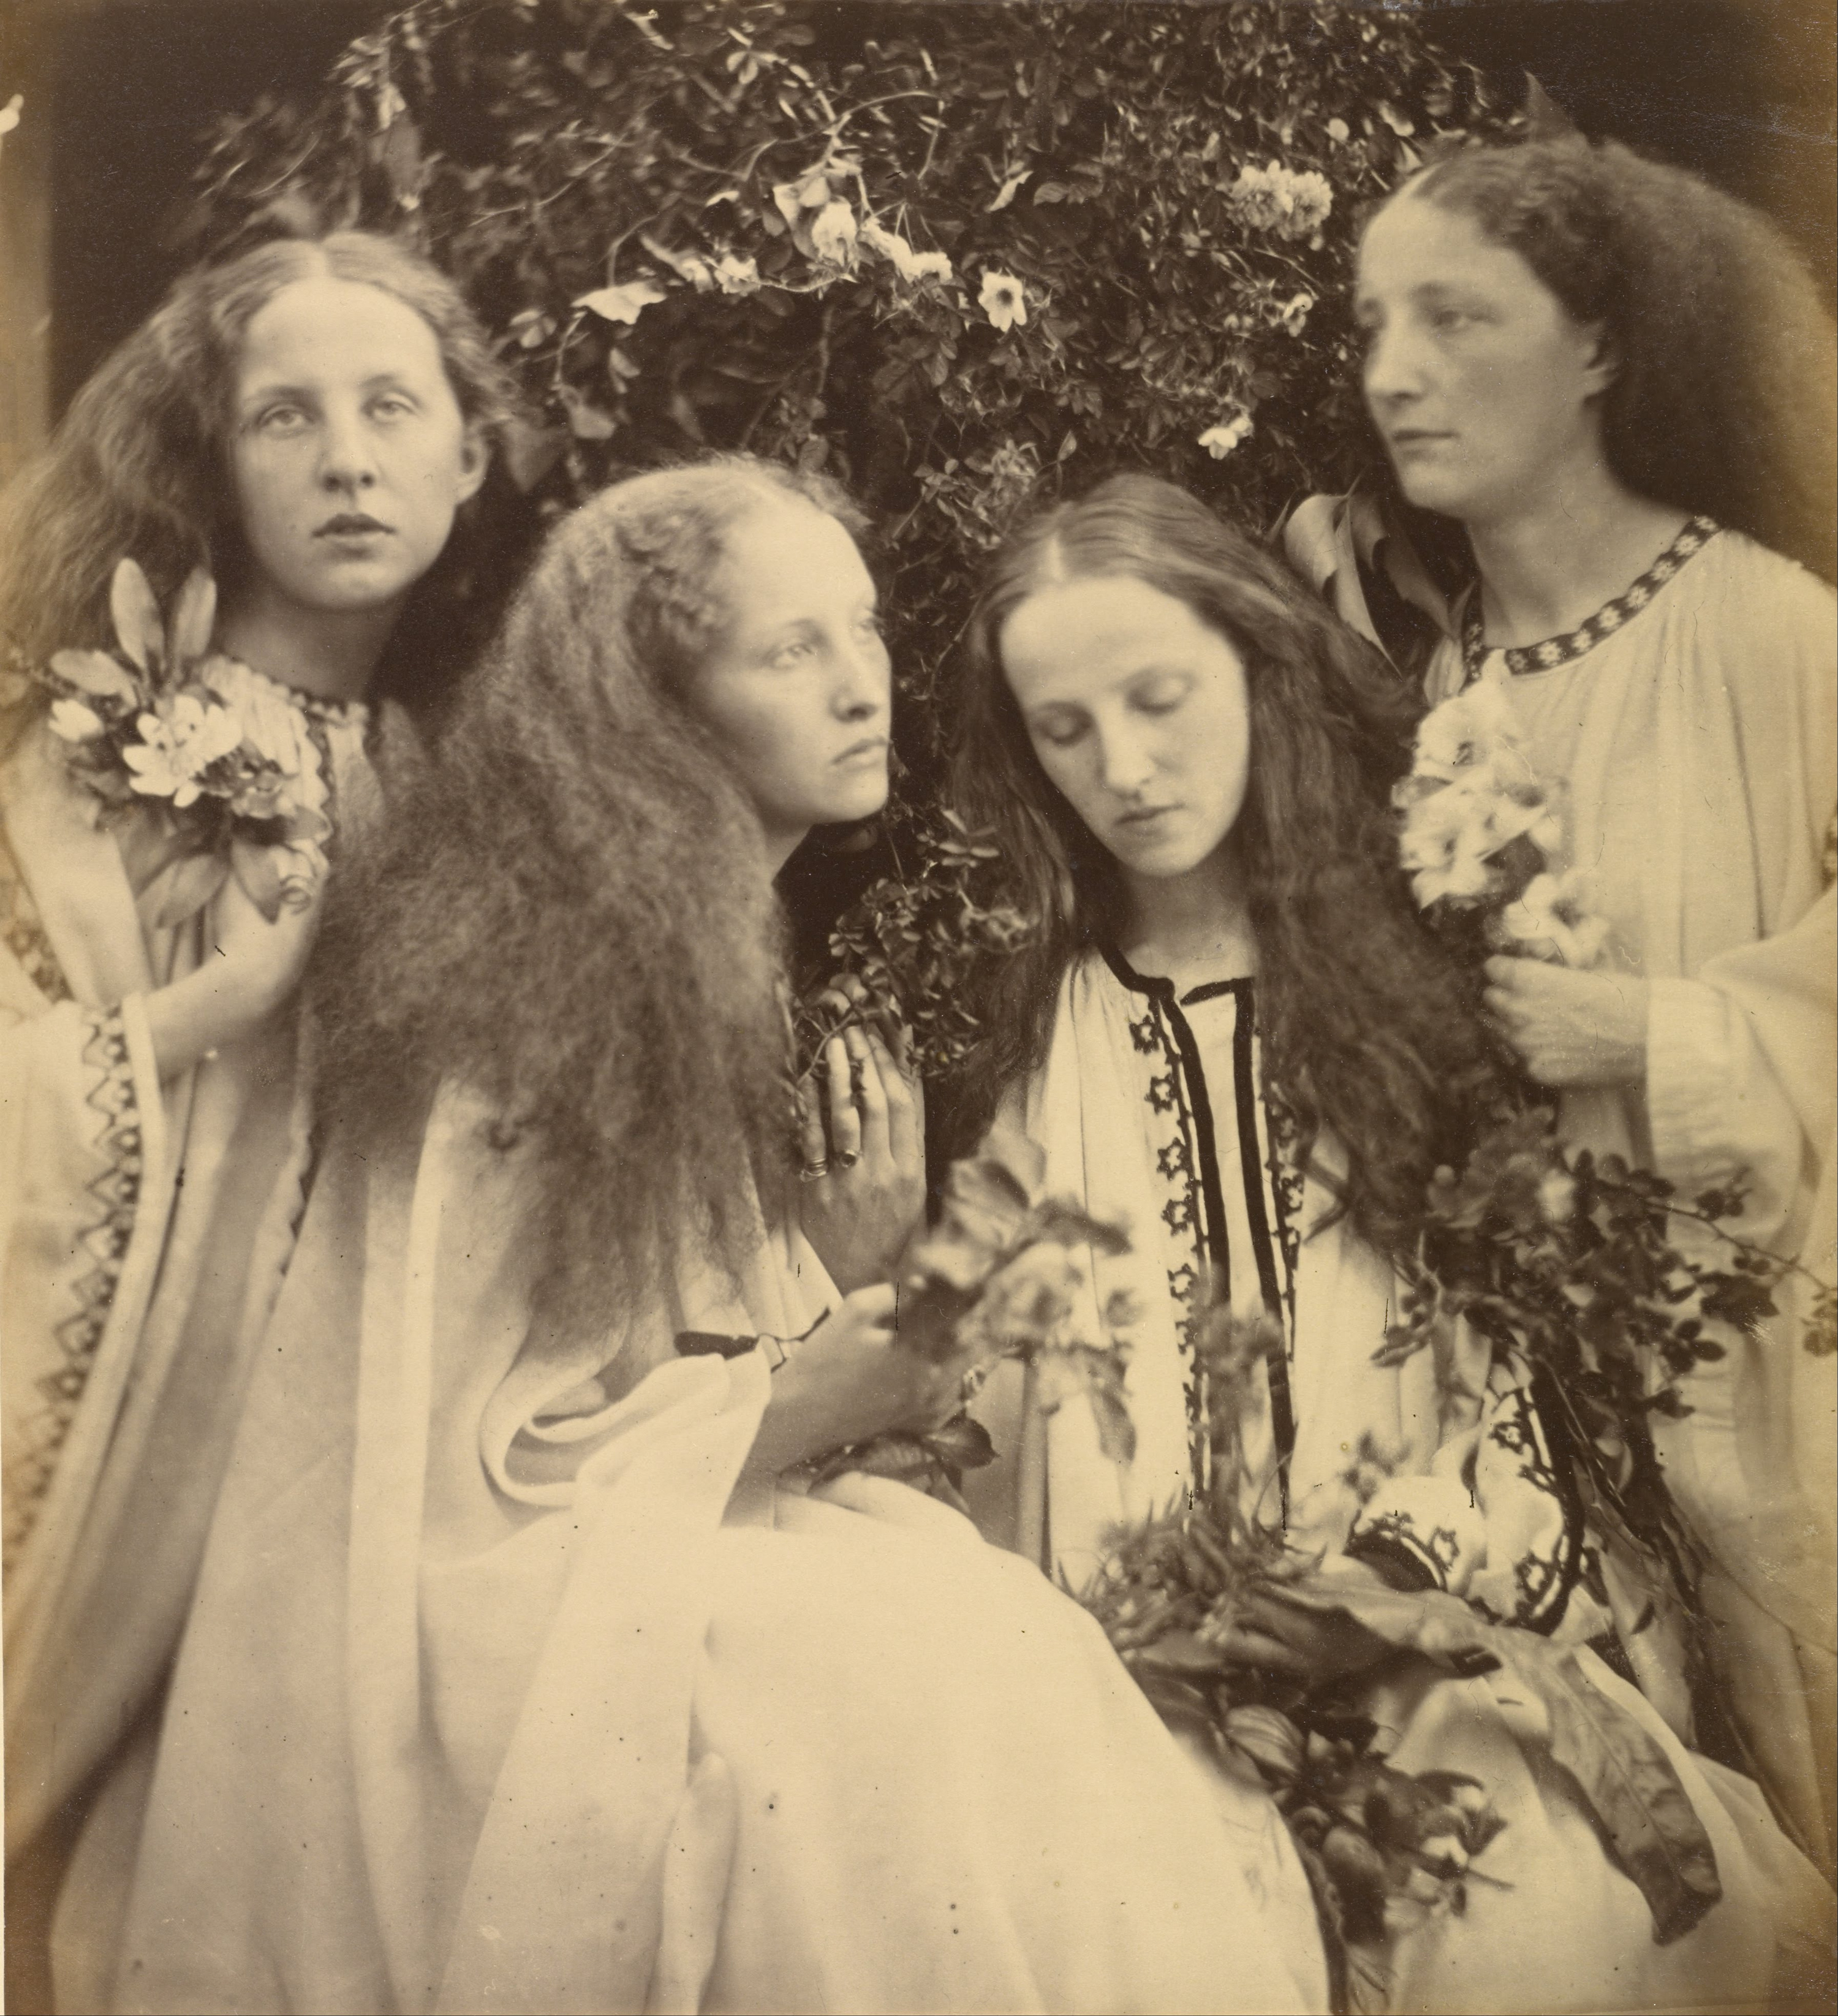 El jardín de rosas de las niñas by Julia Margaret Cameron - June 1868 - 26.7 x 29.4 cm Museo J. Paul Getty